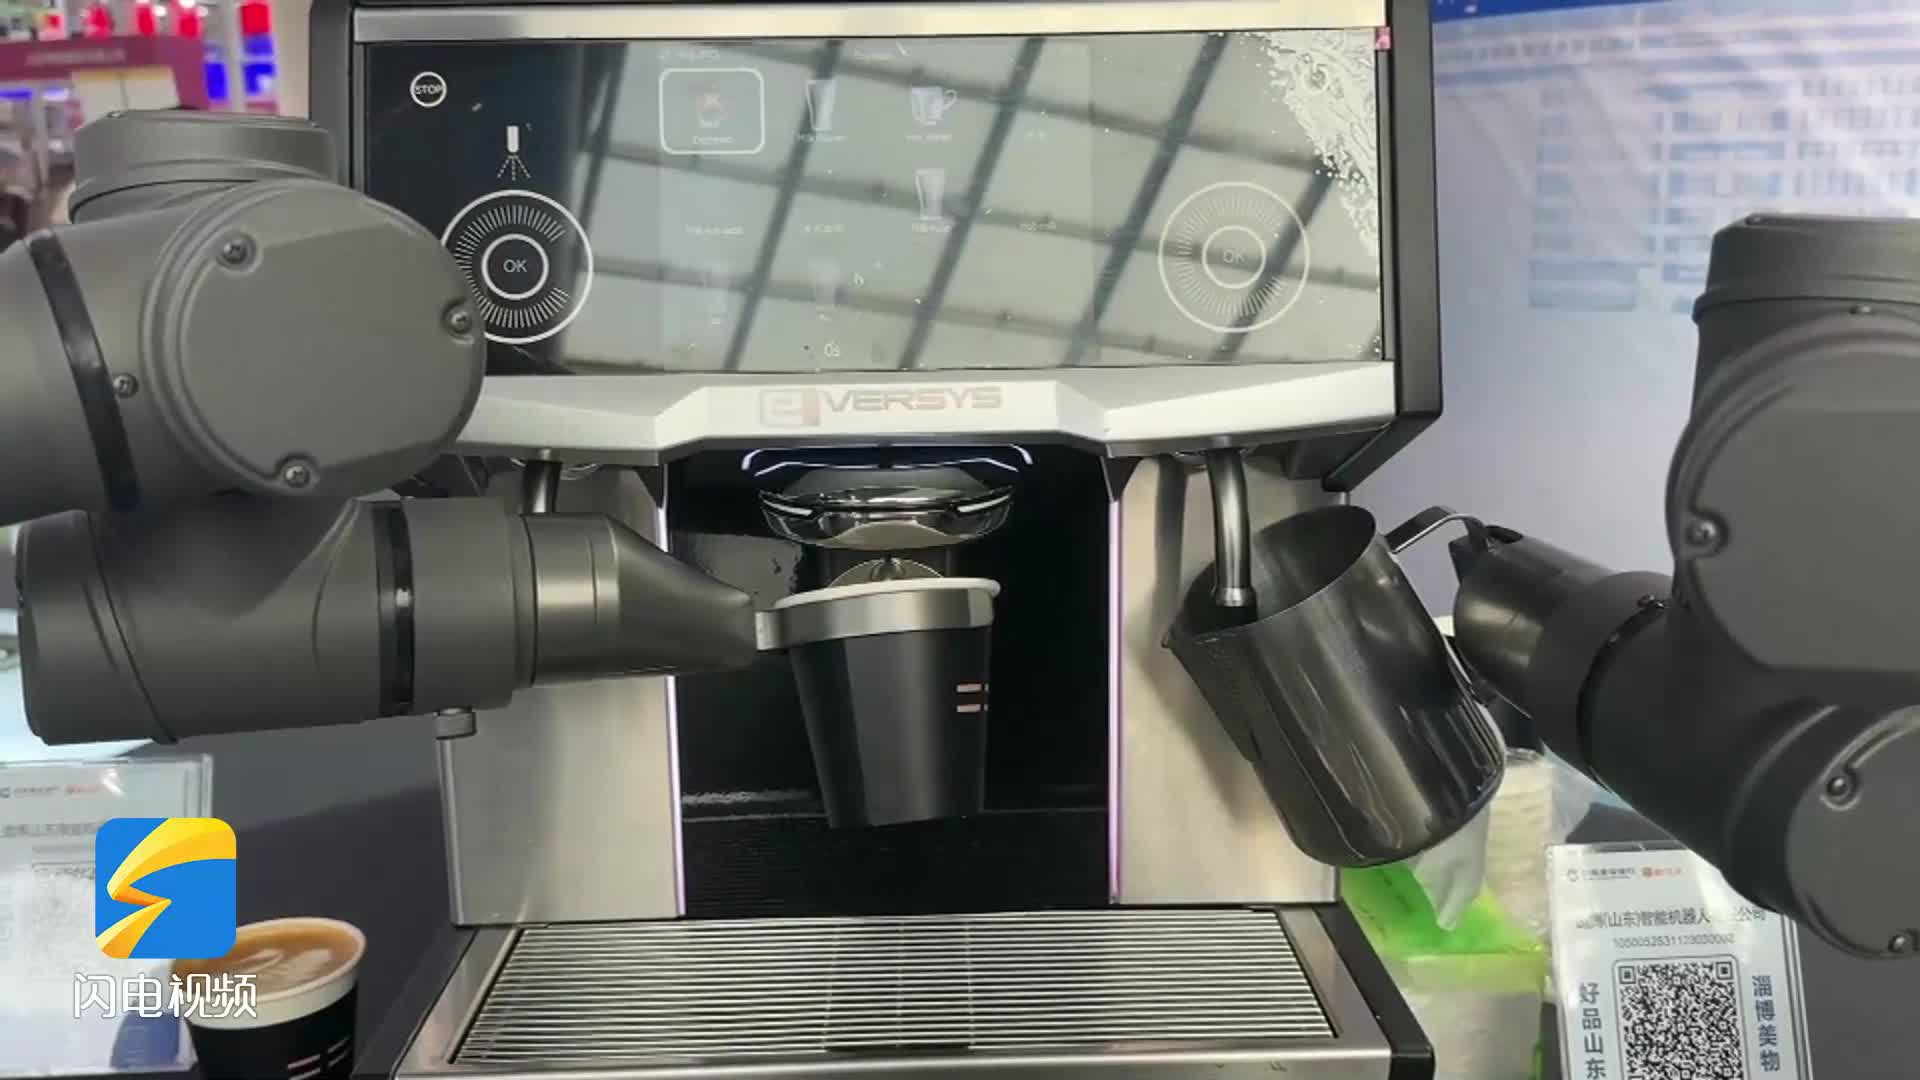 75秒冲咖啡还能拉花的机器人、拥有三千枚芯片的轮式机器人…来看“好品山东·淄博美物”上的“黑科技”